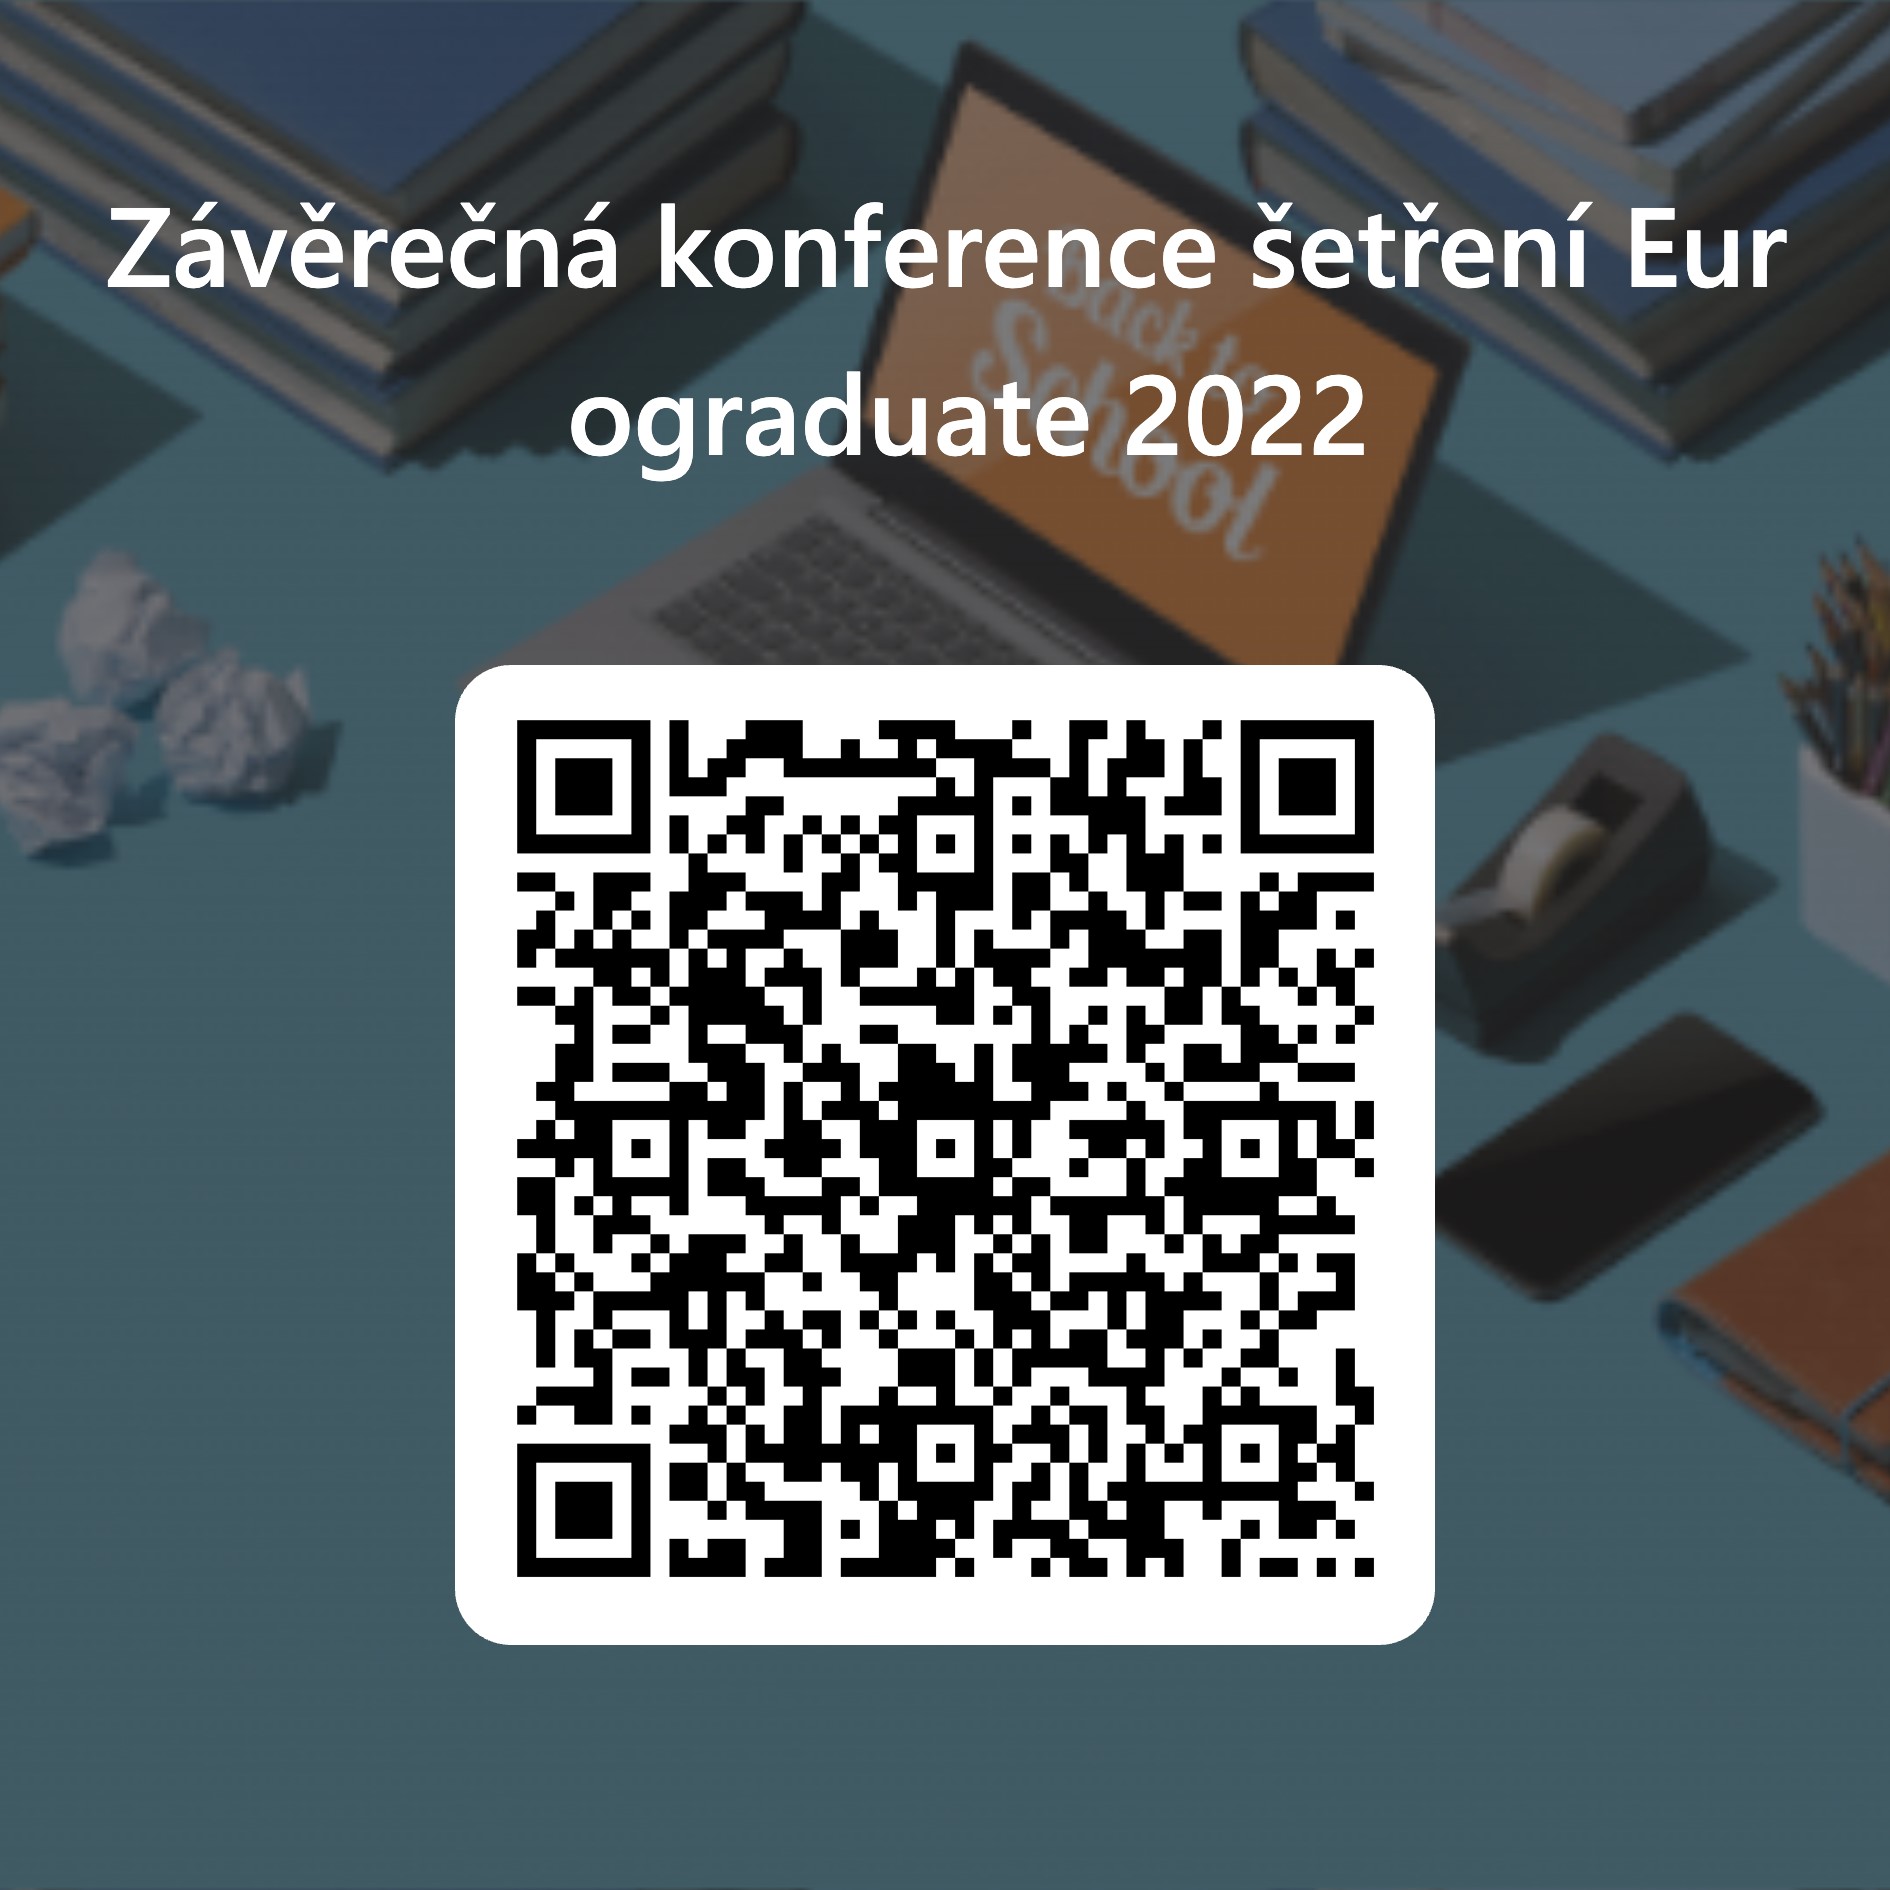 qrcode-pro-z-v-re-n-konference-aetyen-eurograduate-2022-na-web-msmt.jpg